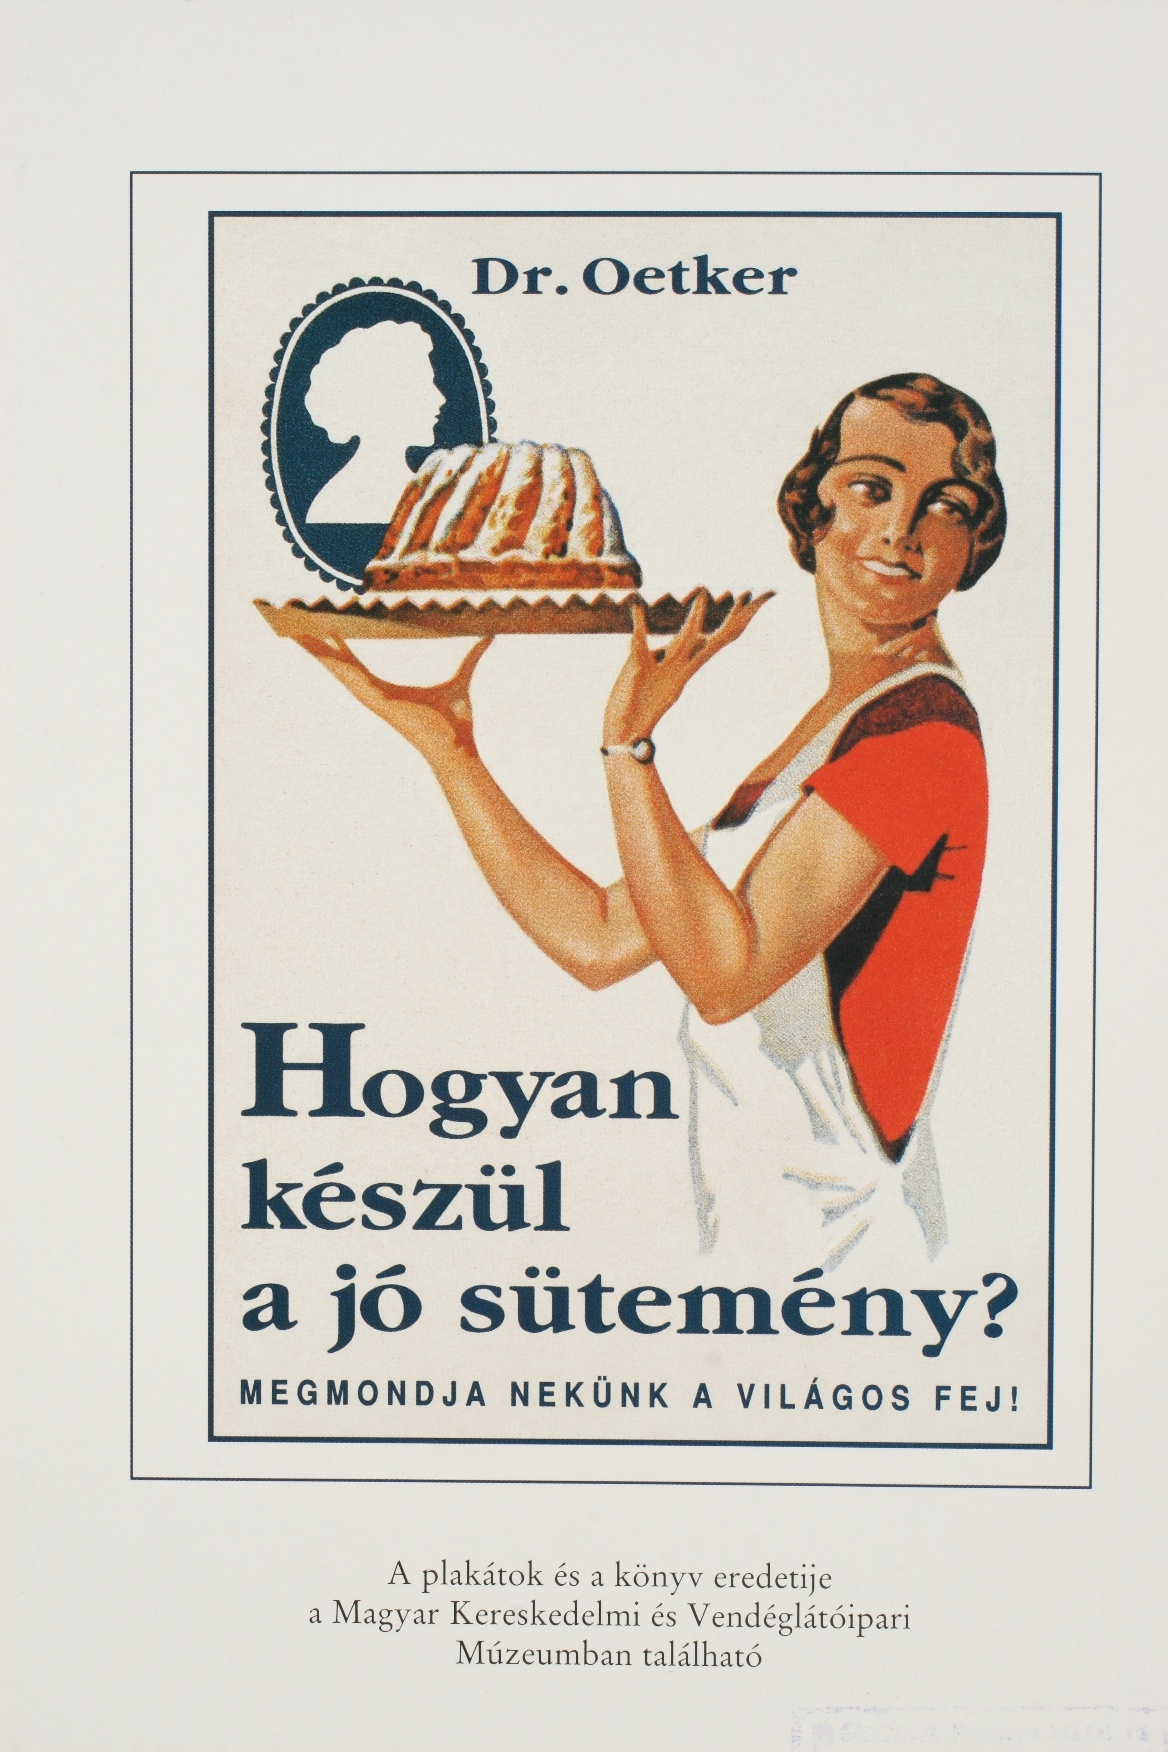 Dr. Oetker receptfüzet, reprint (Magyar Kereskedelmi és Vendéglátóipari Múzeum CC BY-NC-SA)